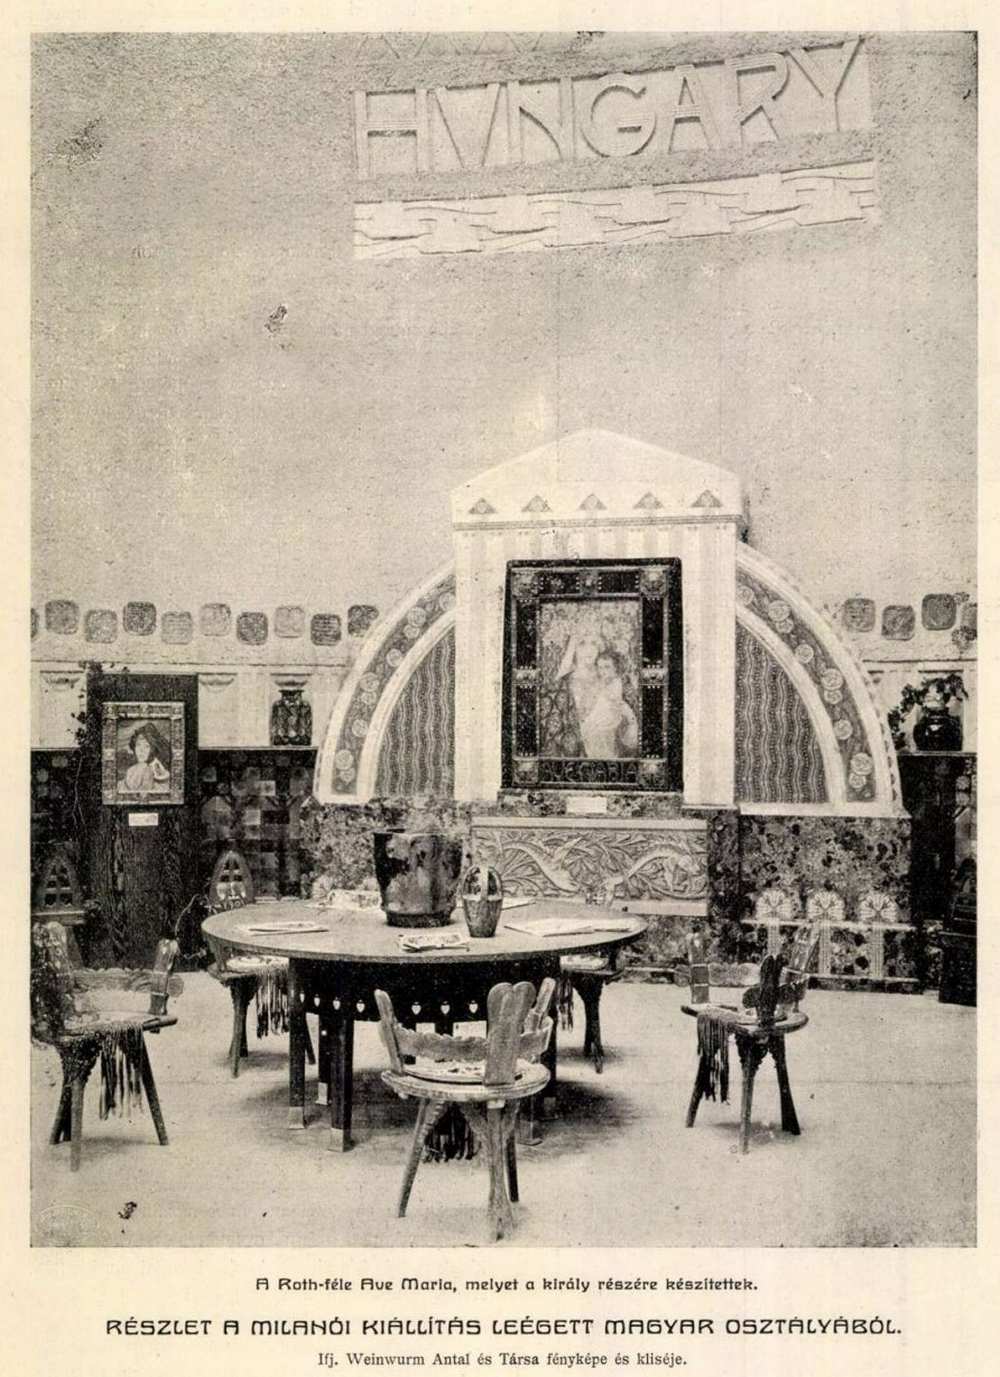 A Roth-féle Ave Maria, melyet a király részére készítettek. Részlet a milánói kiállítás leégett magyar osztályából. In: Ország-Világ, 27. évf., 35. sz. (1906. augusztus 26.), 699. – Törzsgyűjtemény http://nektar.oszk.hu/hu/manifestation/990545